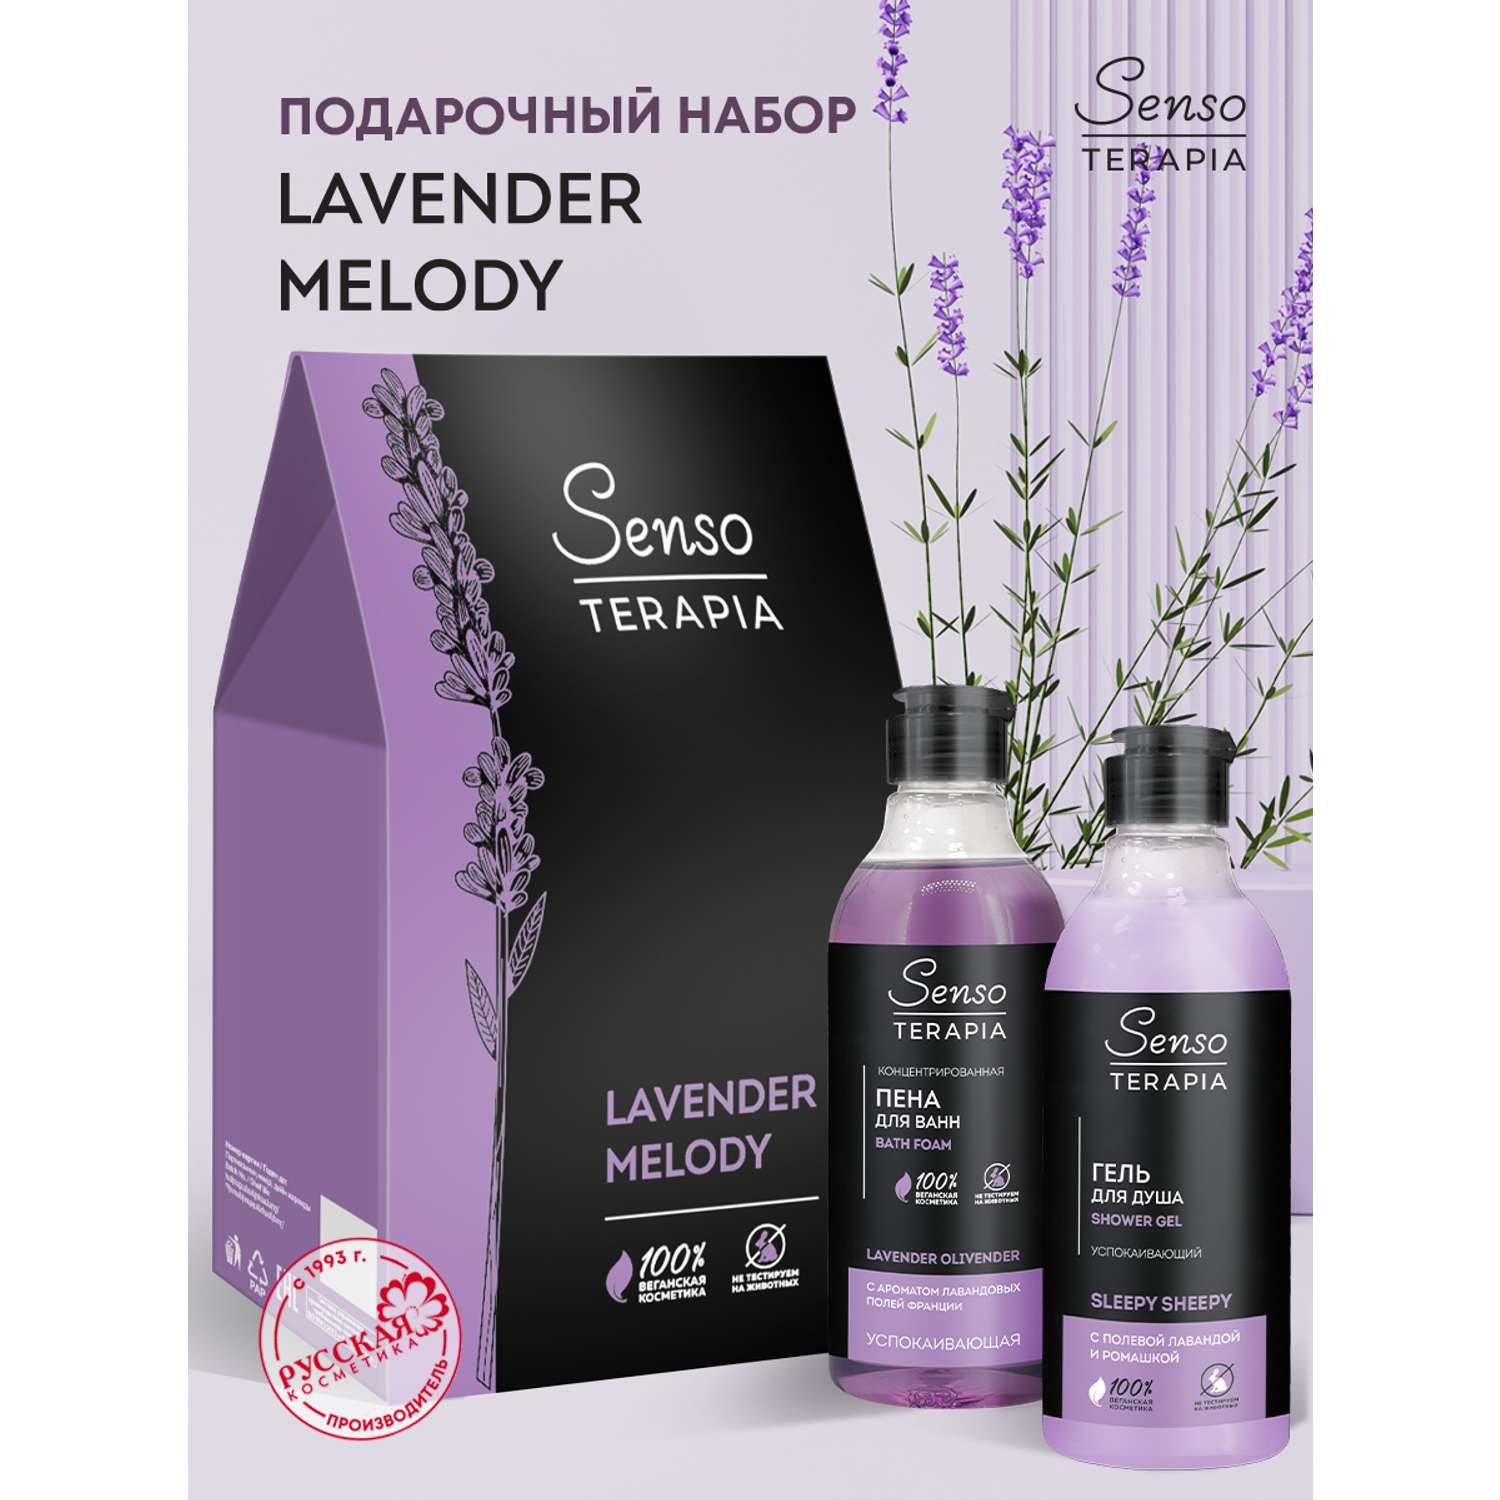 Подарочный набор для женщин Senso Terapia Lavender melody - фото 1